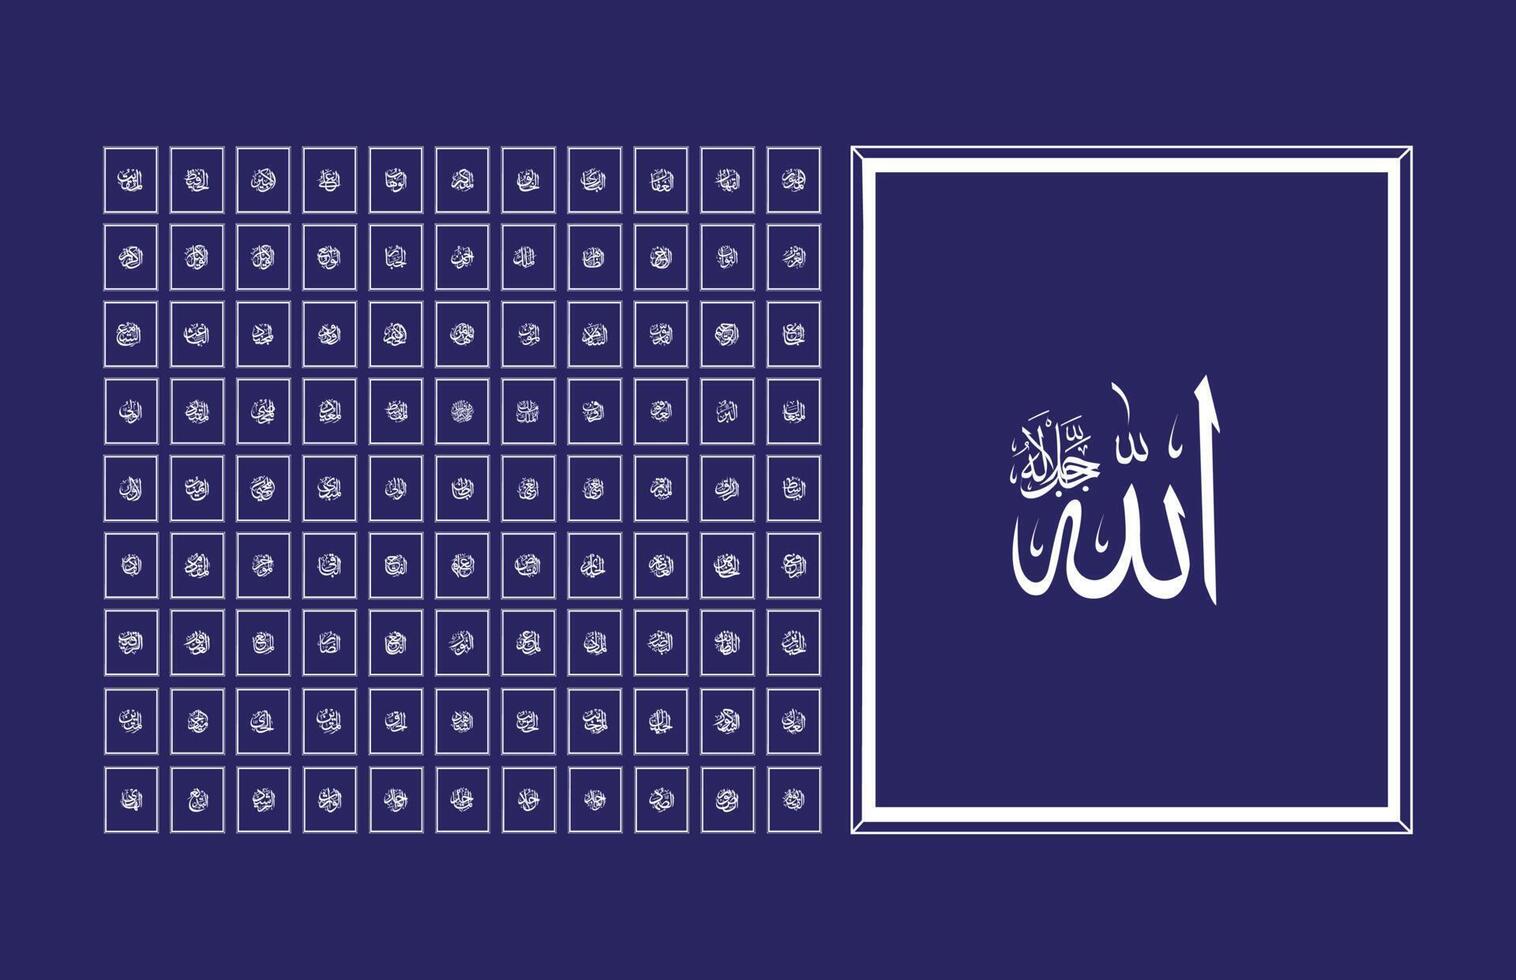 99 des noms de Allah dans arabe calligraphie style avec cadres vecteur